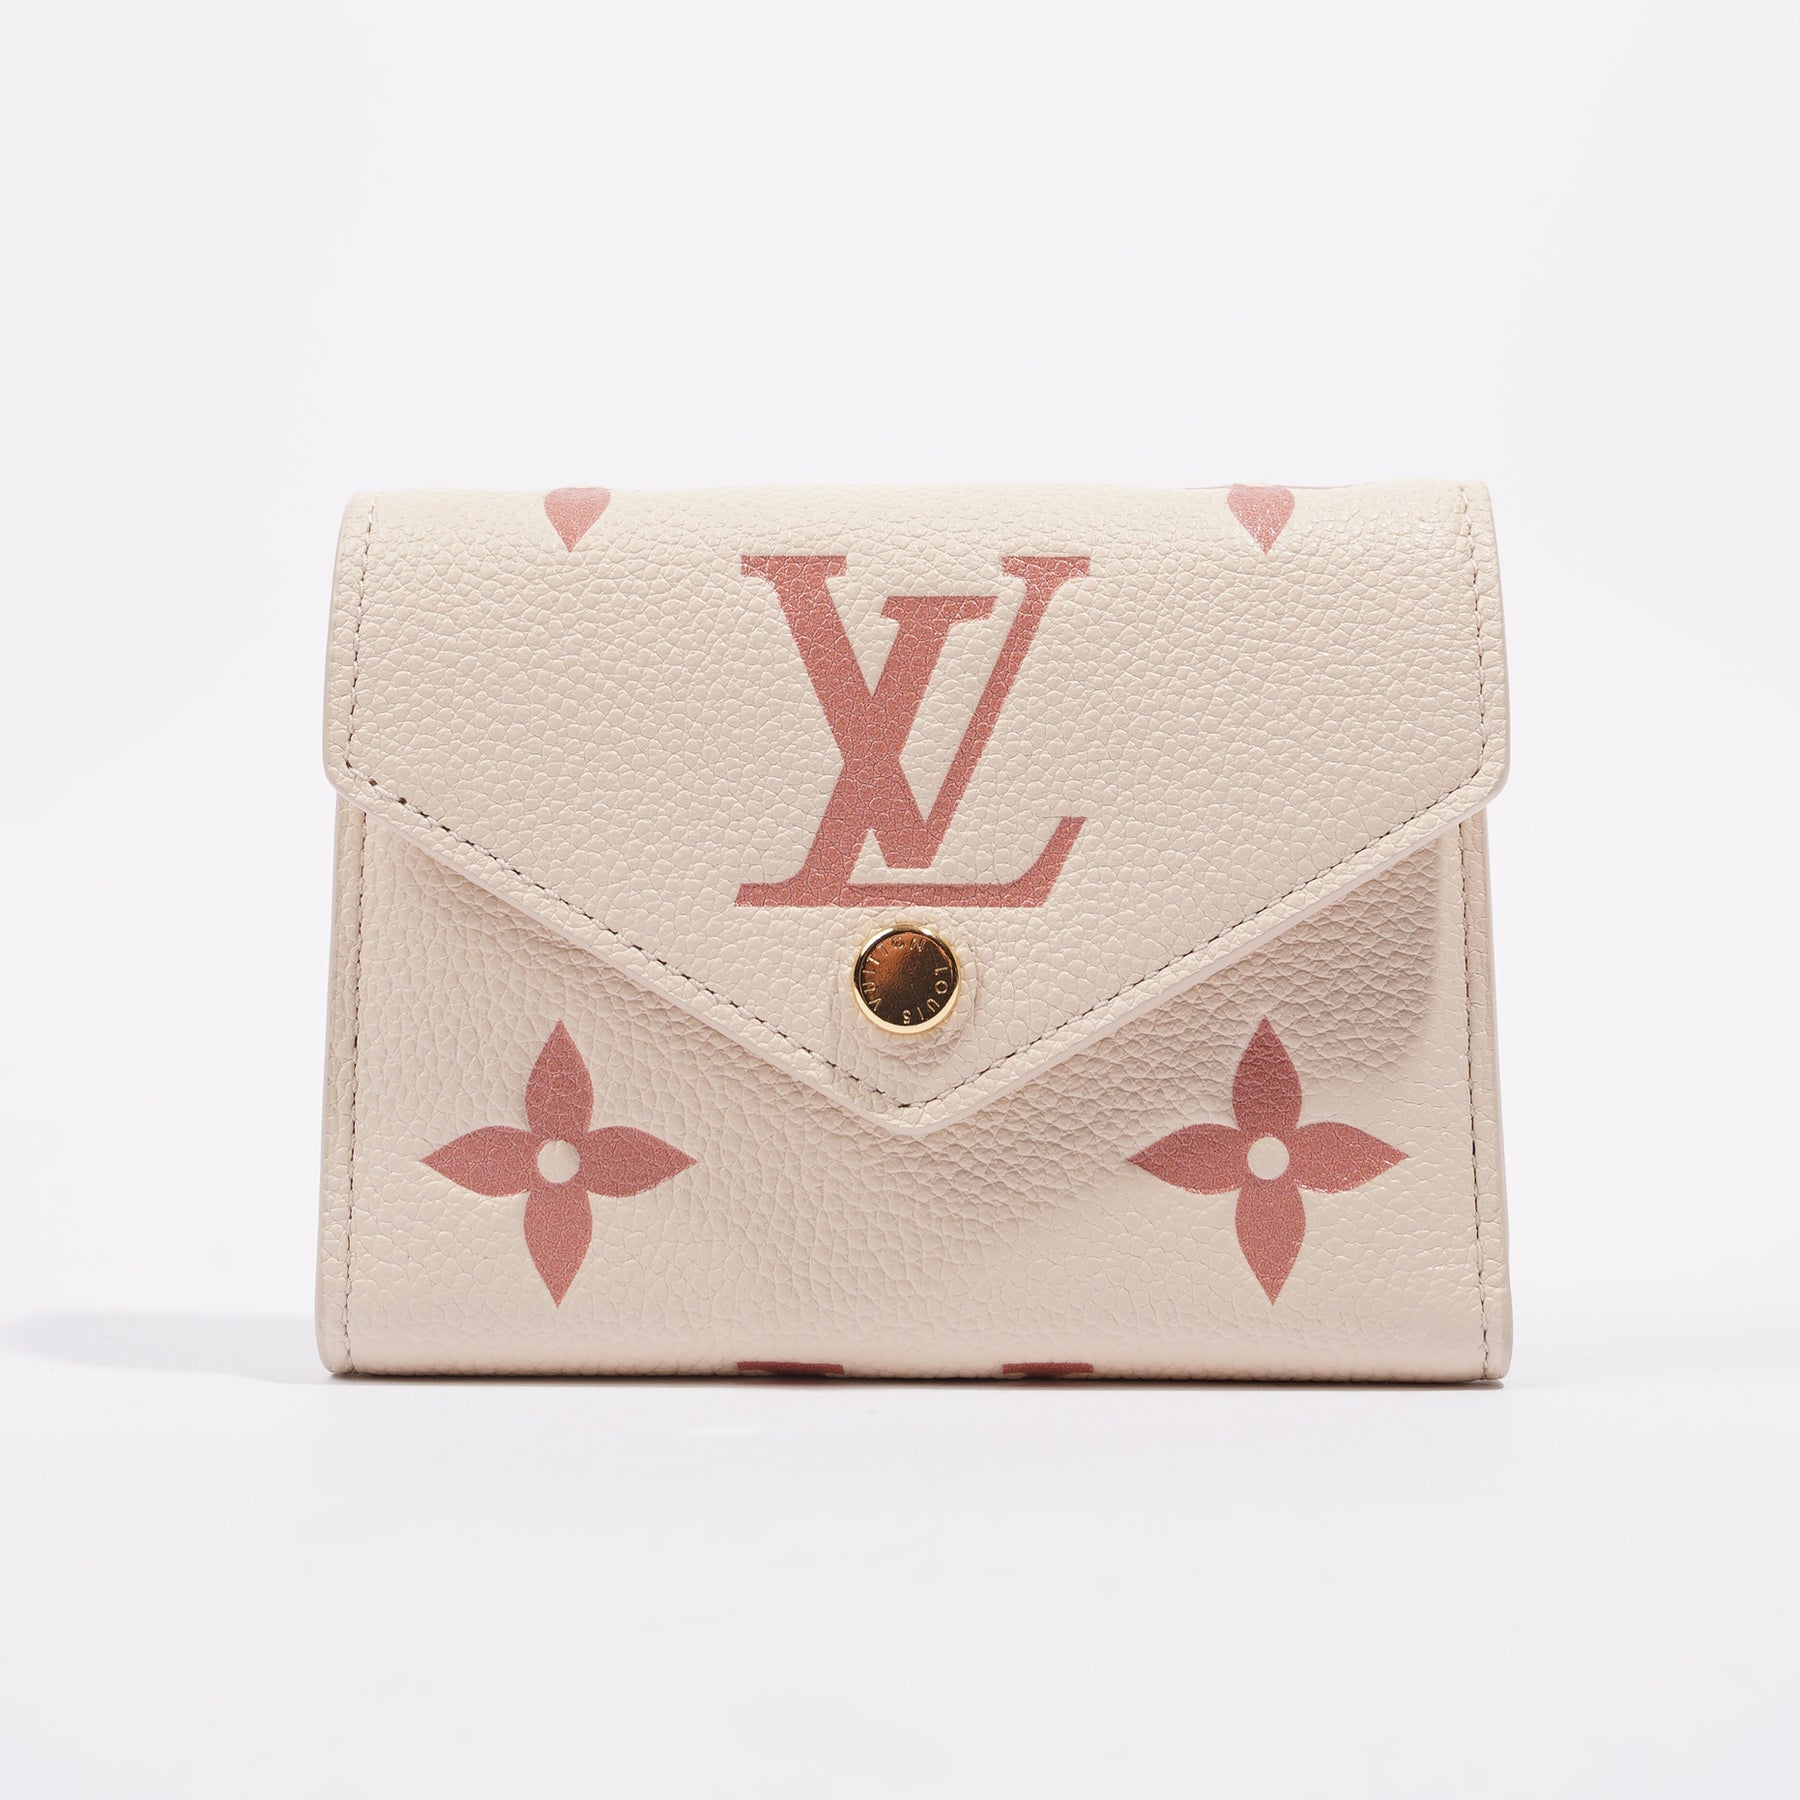 Louis Vuitton - Victorine Wallet - Monogram Leather - Black / Beige - Women - Luxury